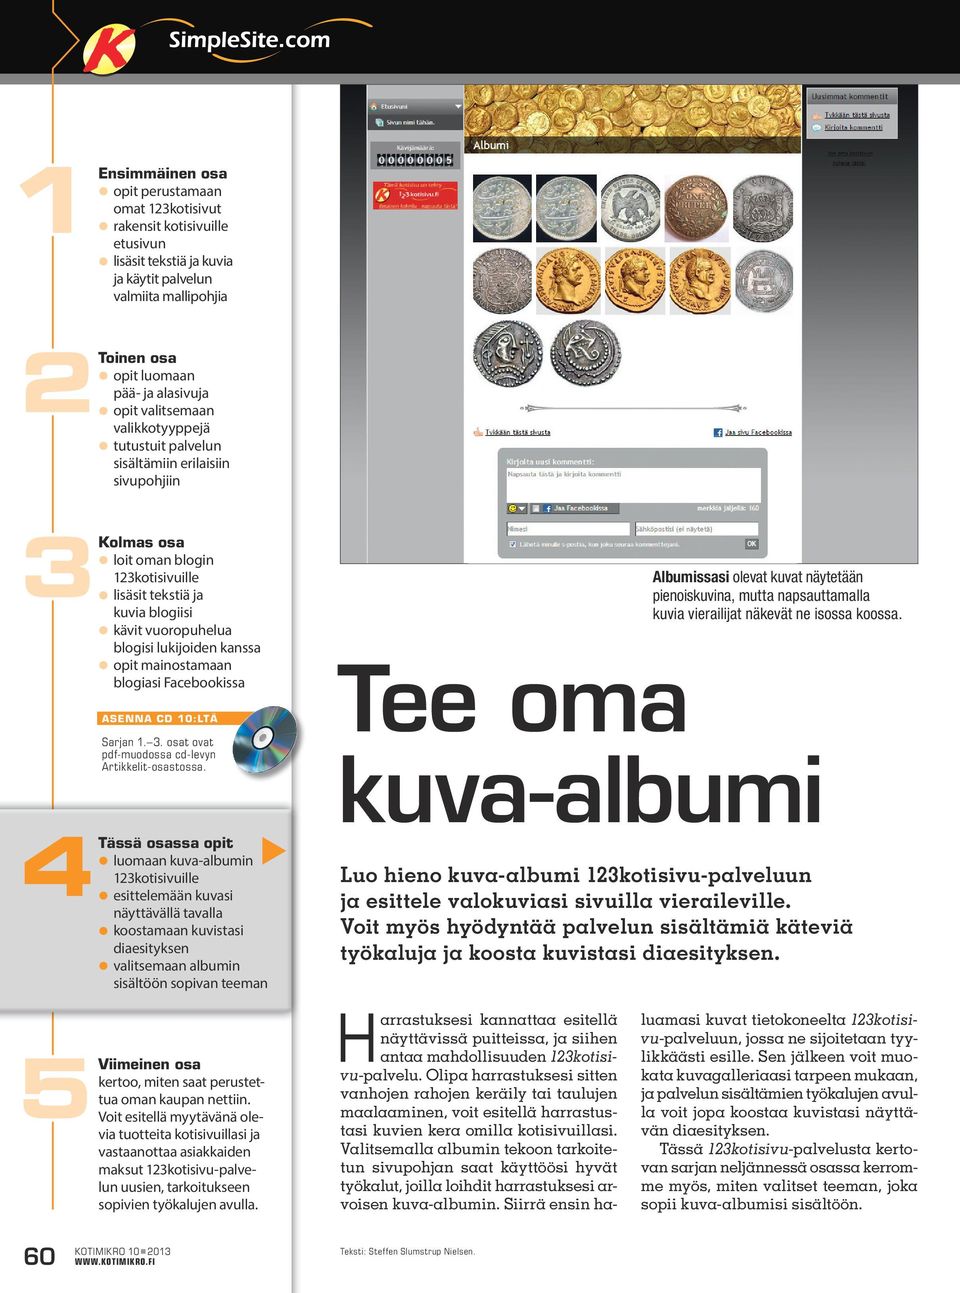 kanssa opit mainostamaan blogiasi Facebookissa asenna cd 0:ltä Sarjan.. osat ovat pdf-muodossa cd-levyn Artikkelit-osastossa.